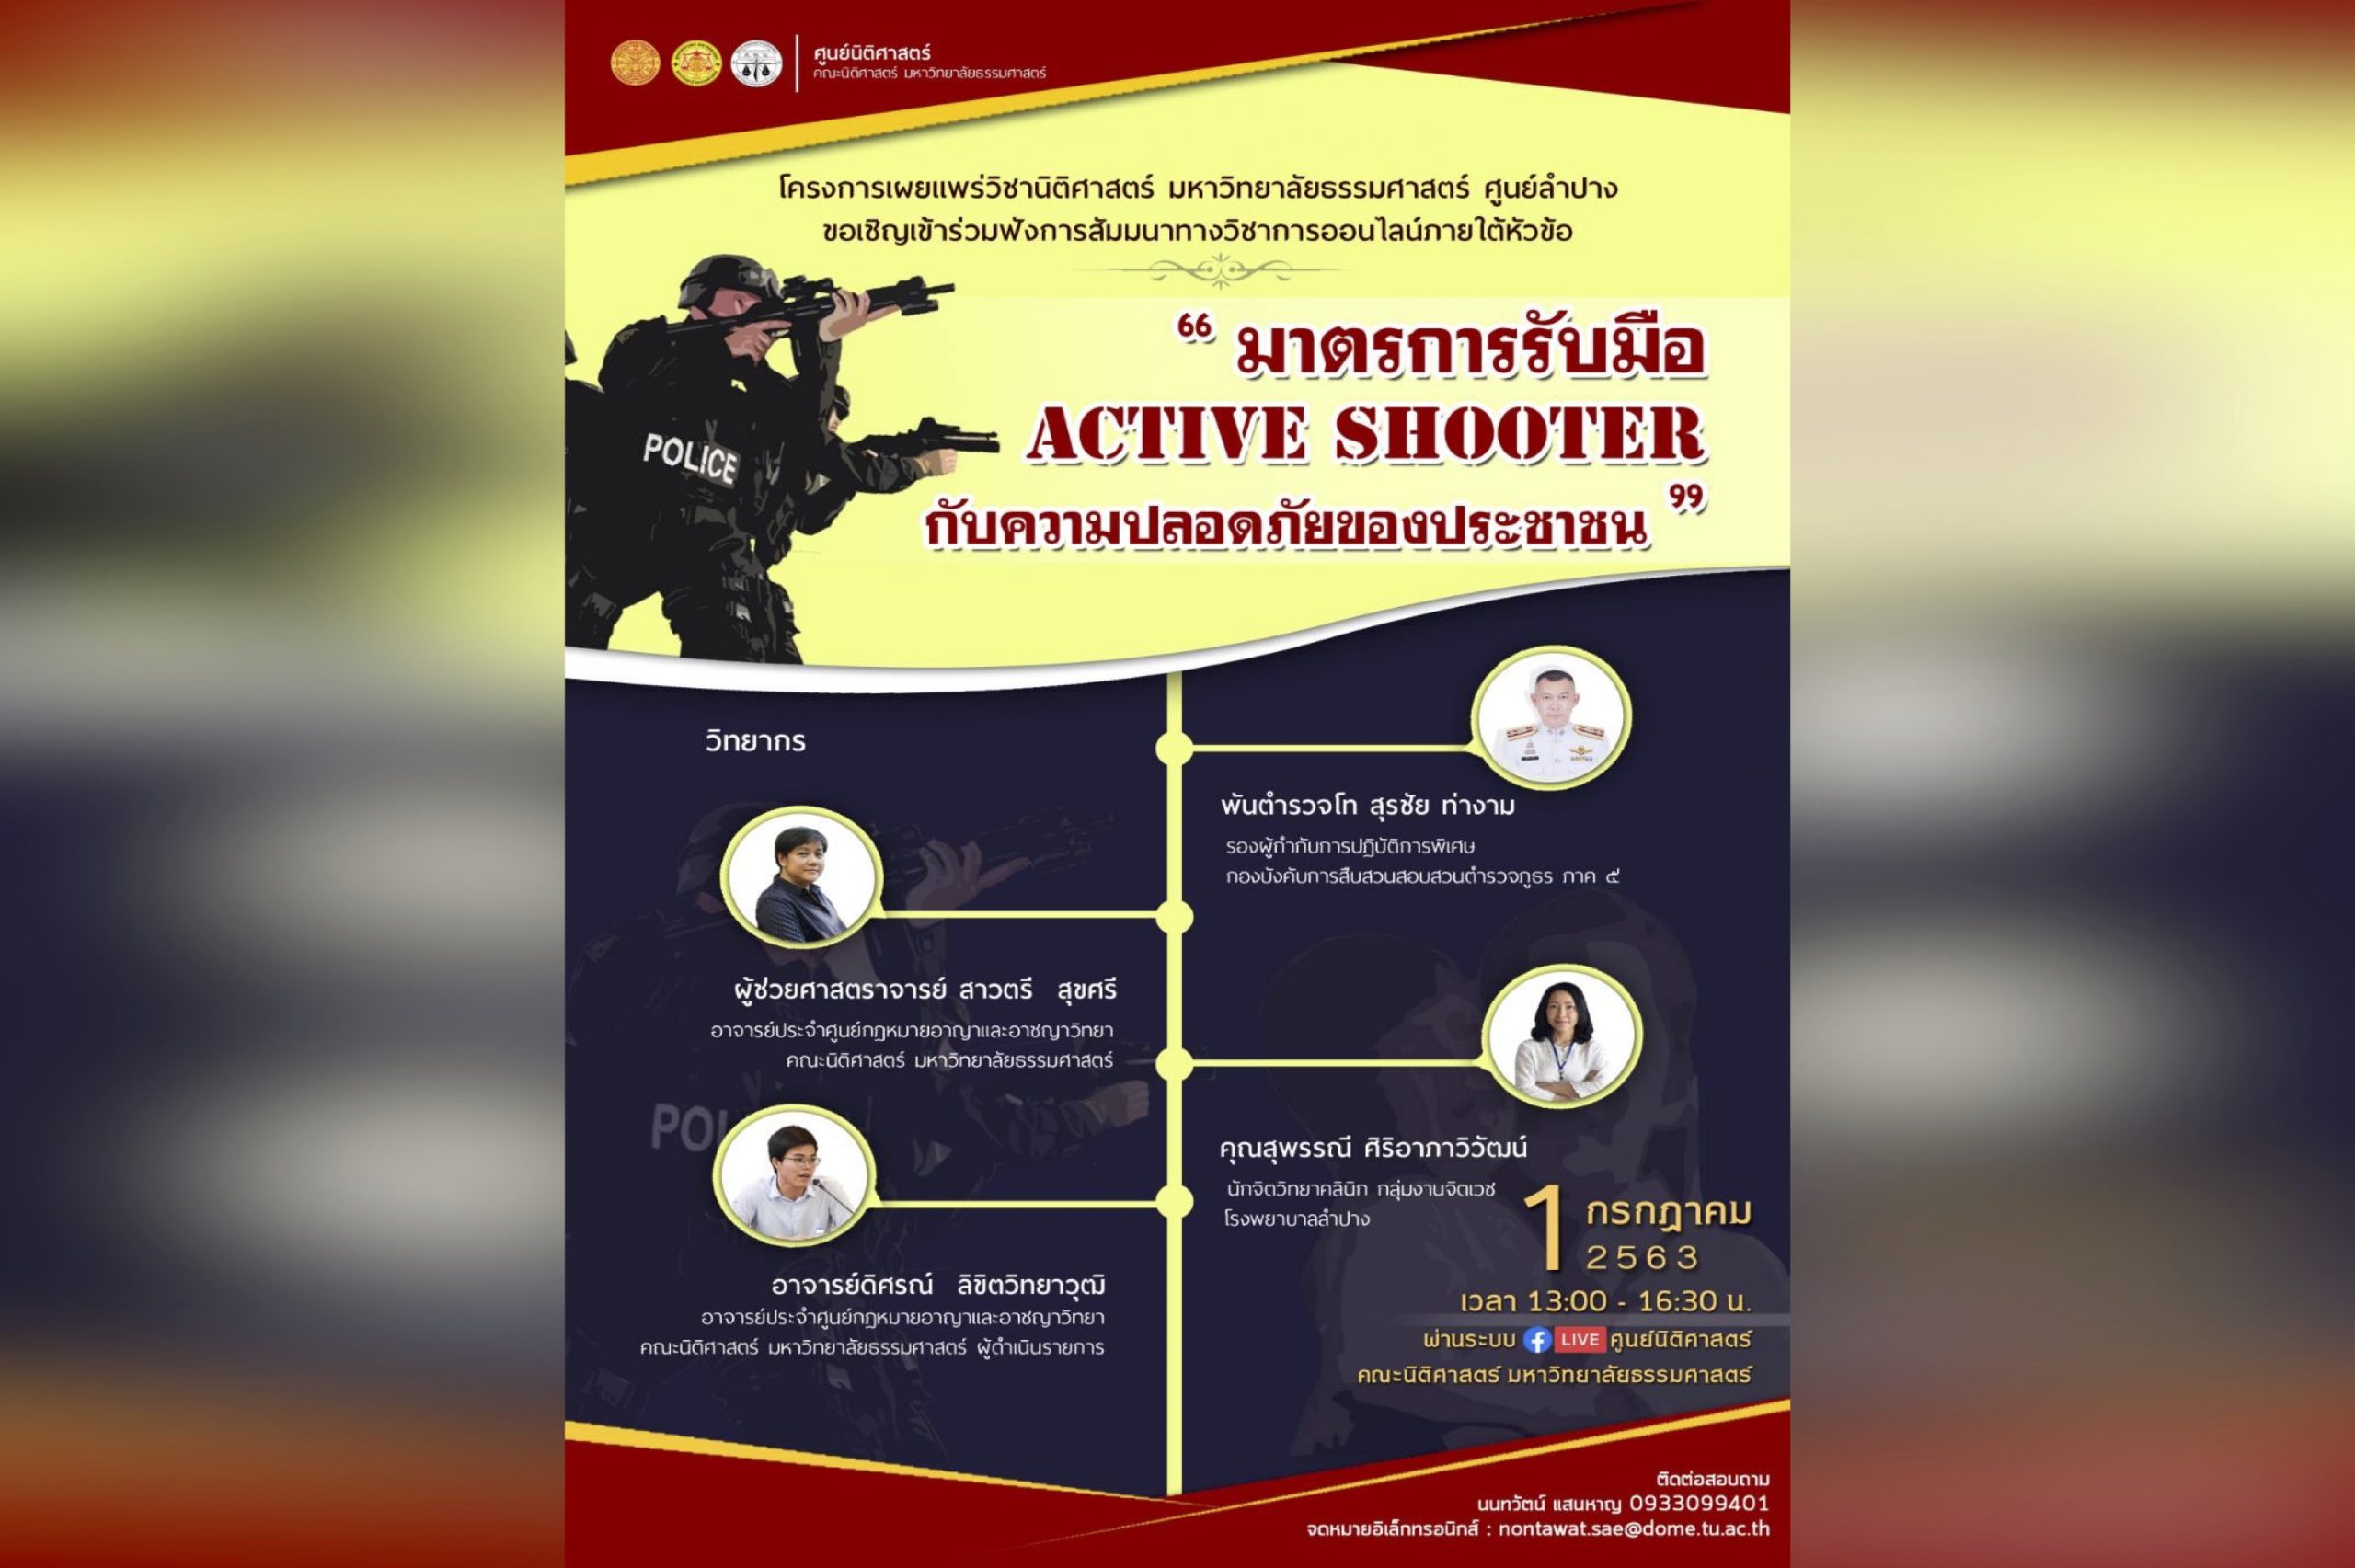 สรุปสาระสำคัญจากสัมมนาวิชาการ เรื่อง “มาตรการรับมือ Active Shooter กับความปลอดภัยของสังคมไทย”